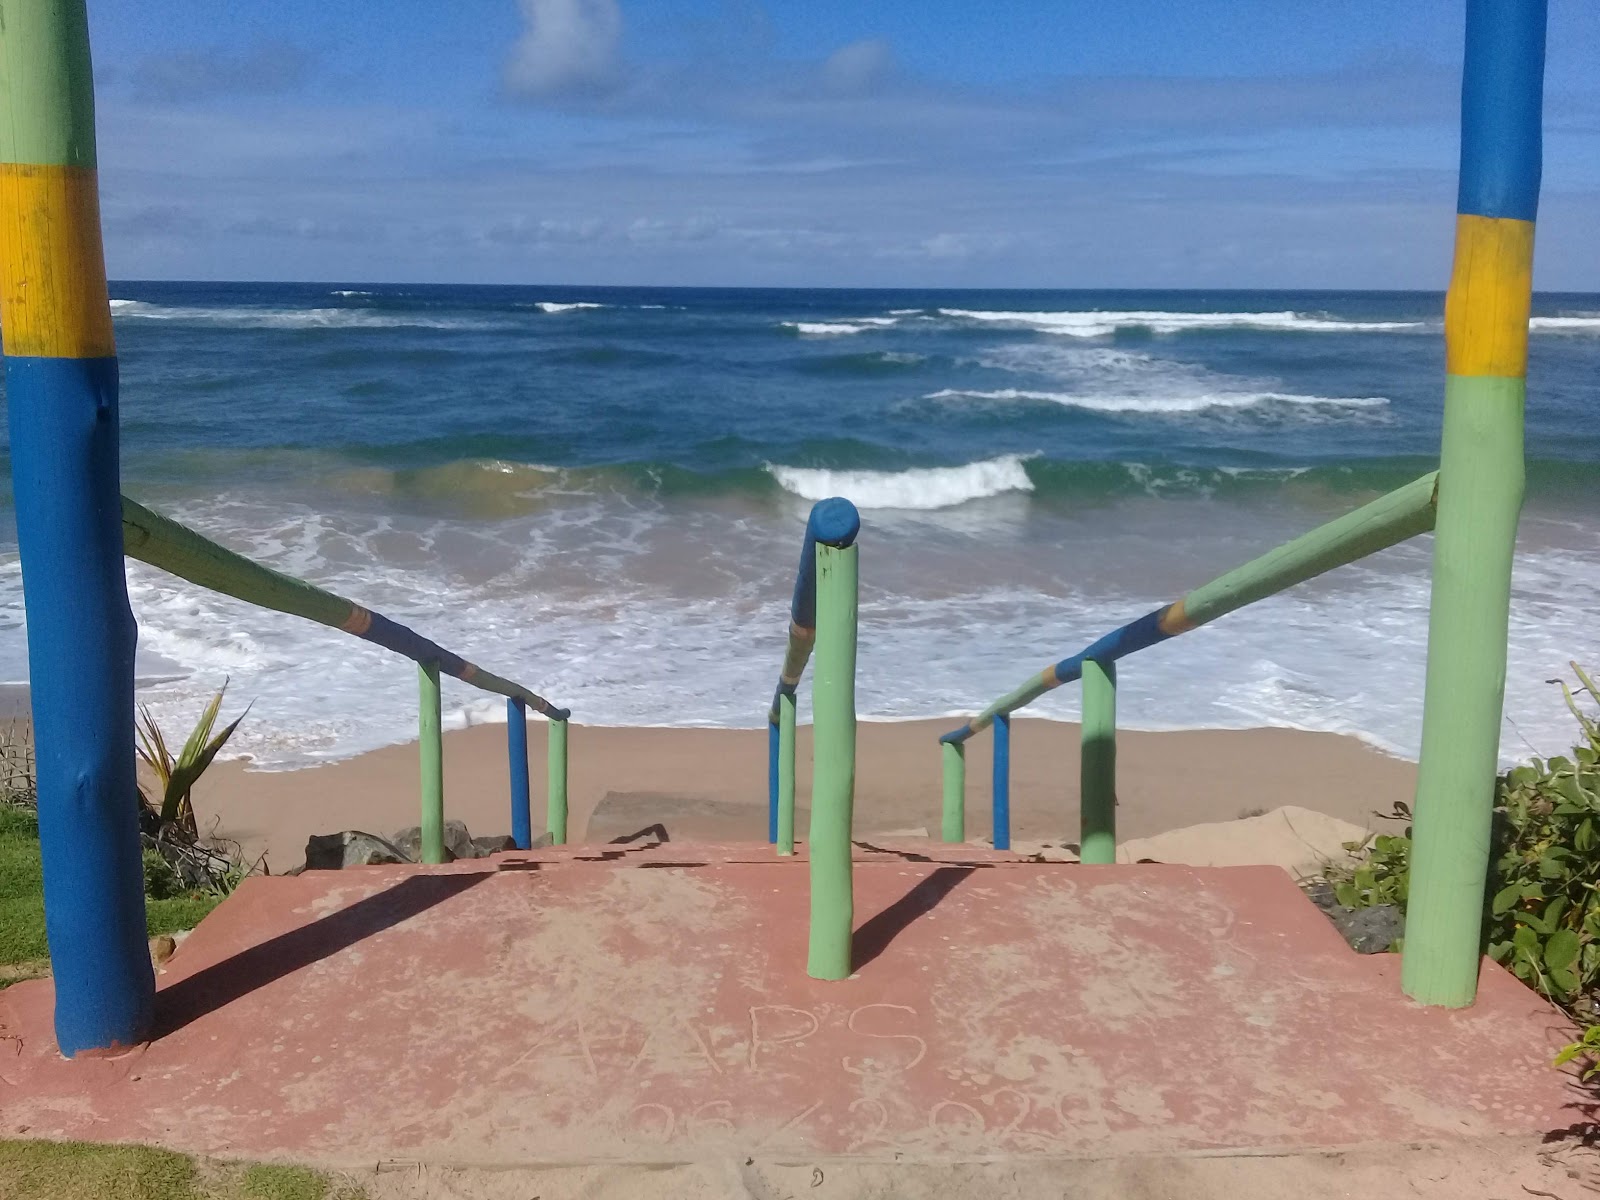 Foto af Praia de Saquaira - populært sted blandt afslapningskendere